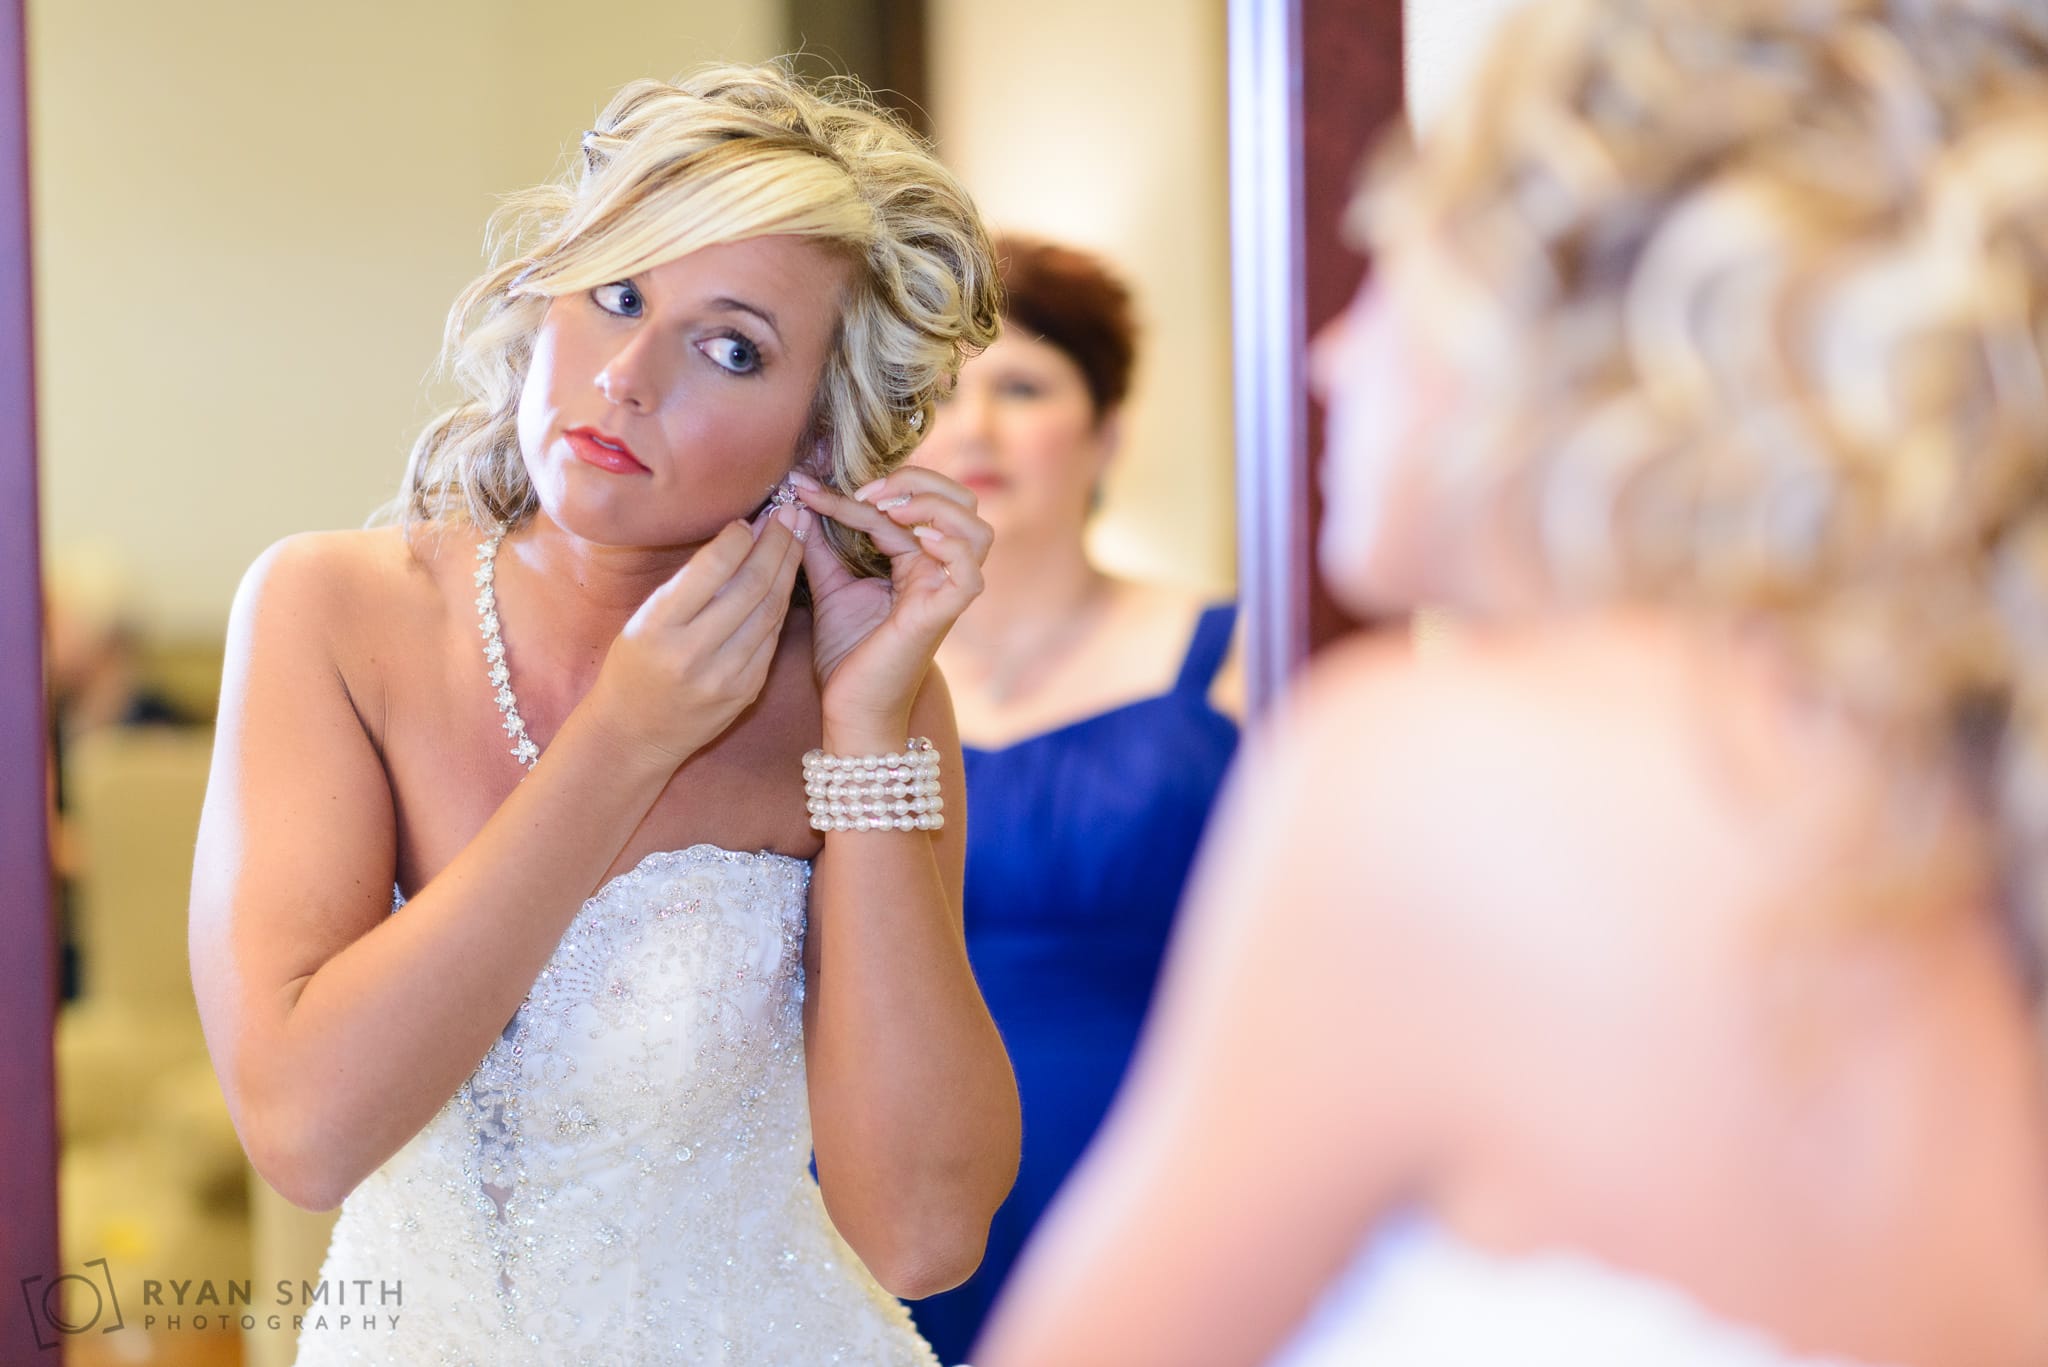 Bride putting on earrings in the mirror - Members Club at Grande Dunes